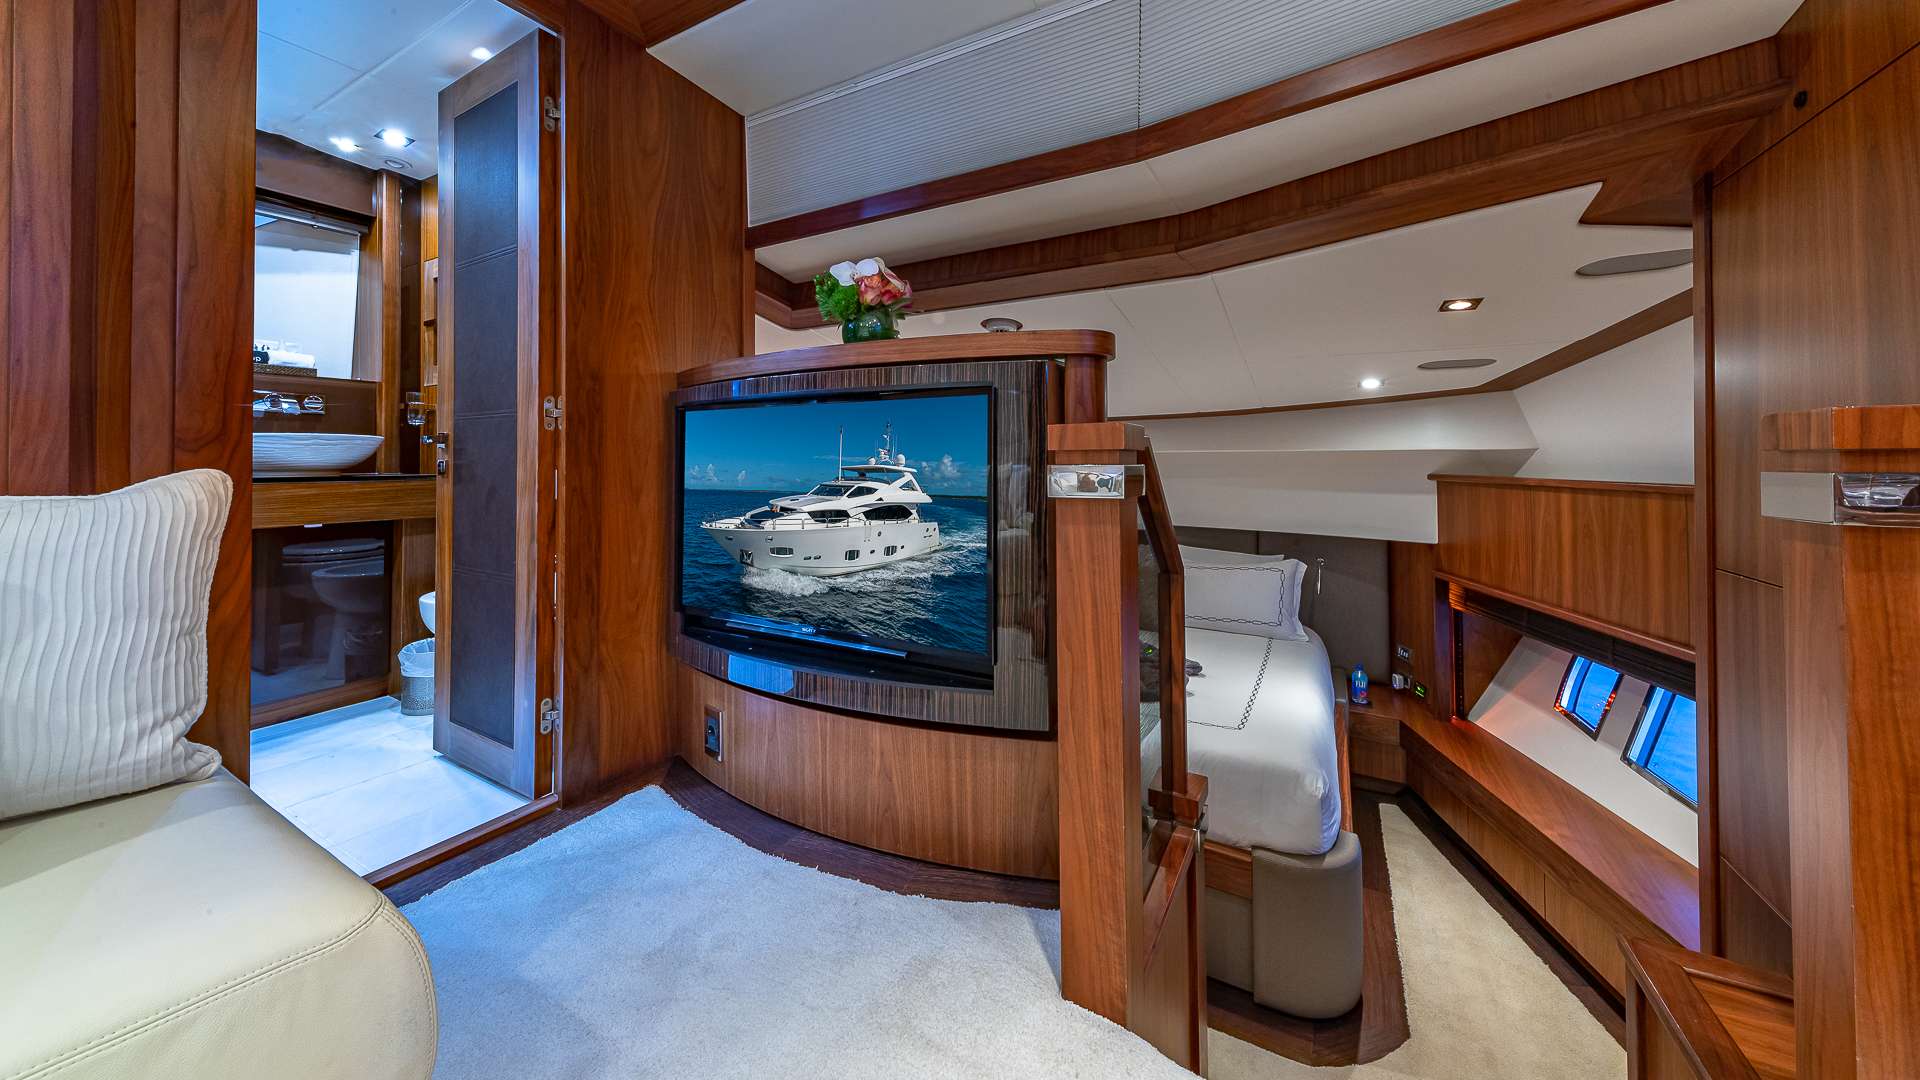 EMRYS Yacht Charter - Split Level/On-Deck King Master Stateroom